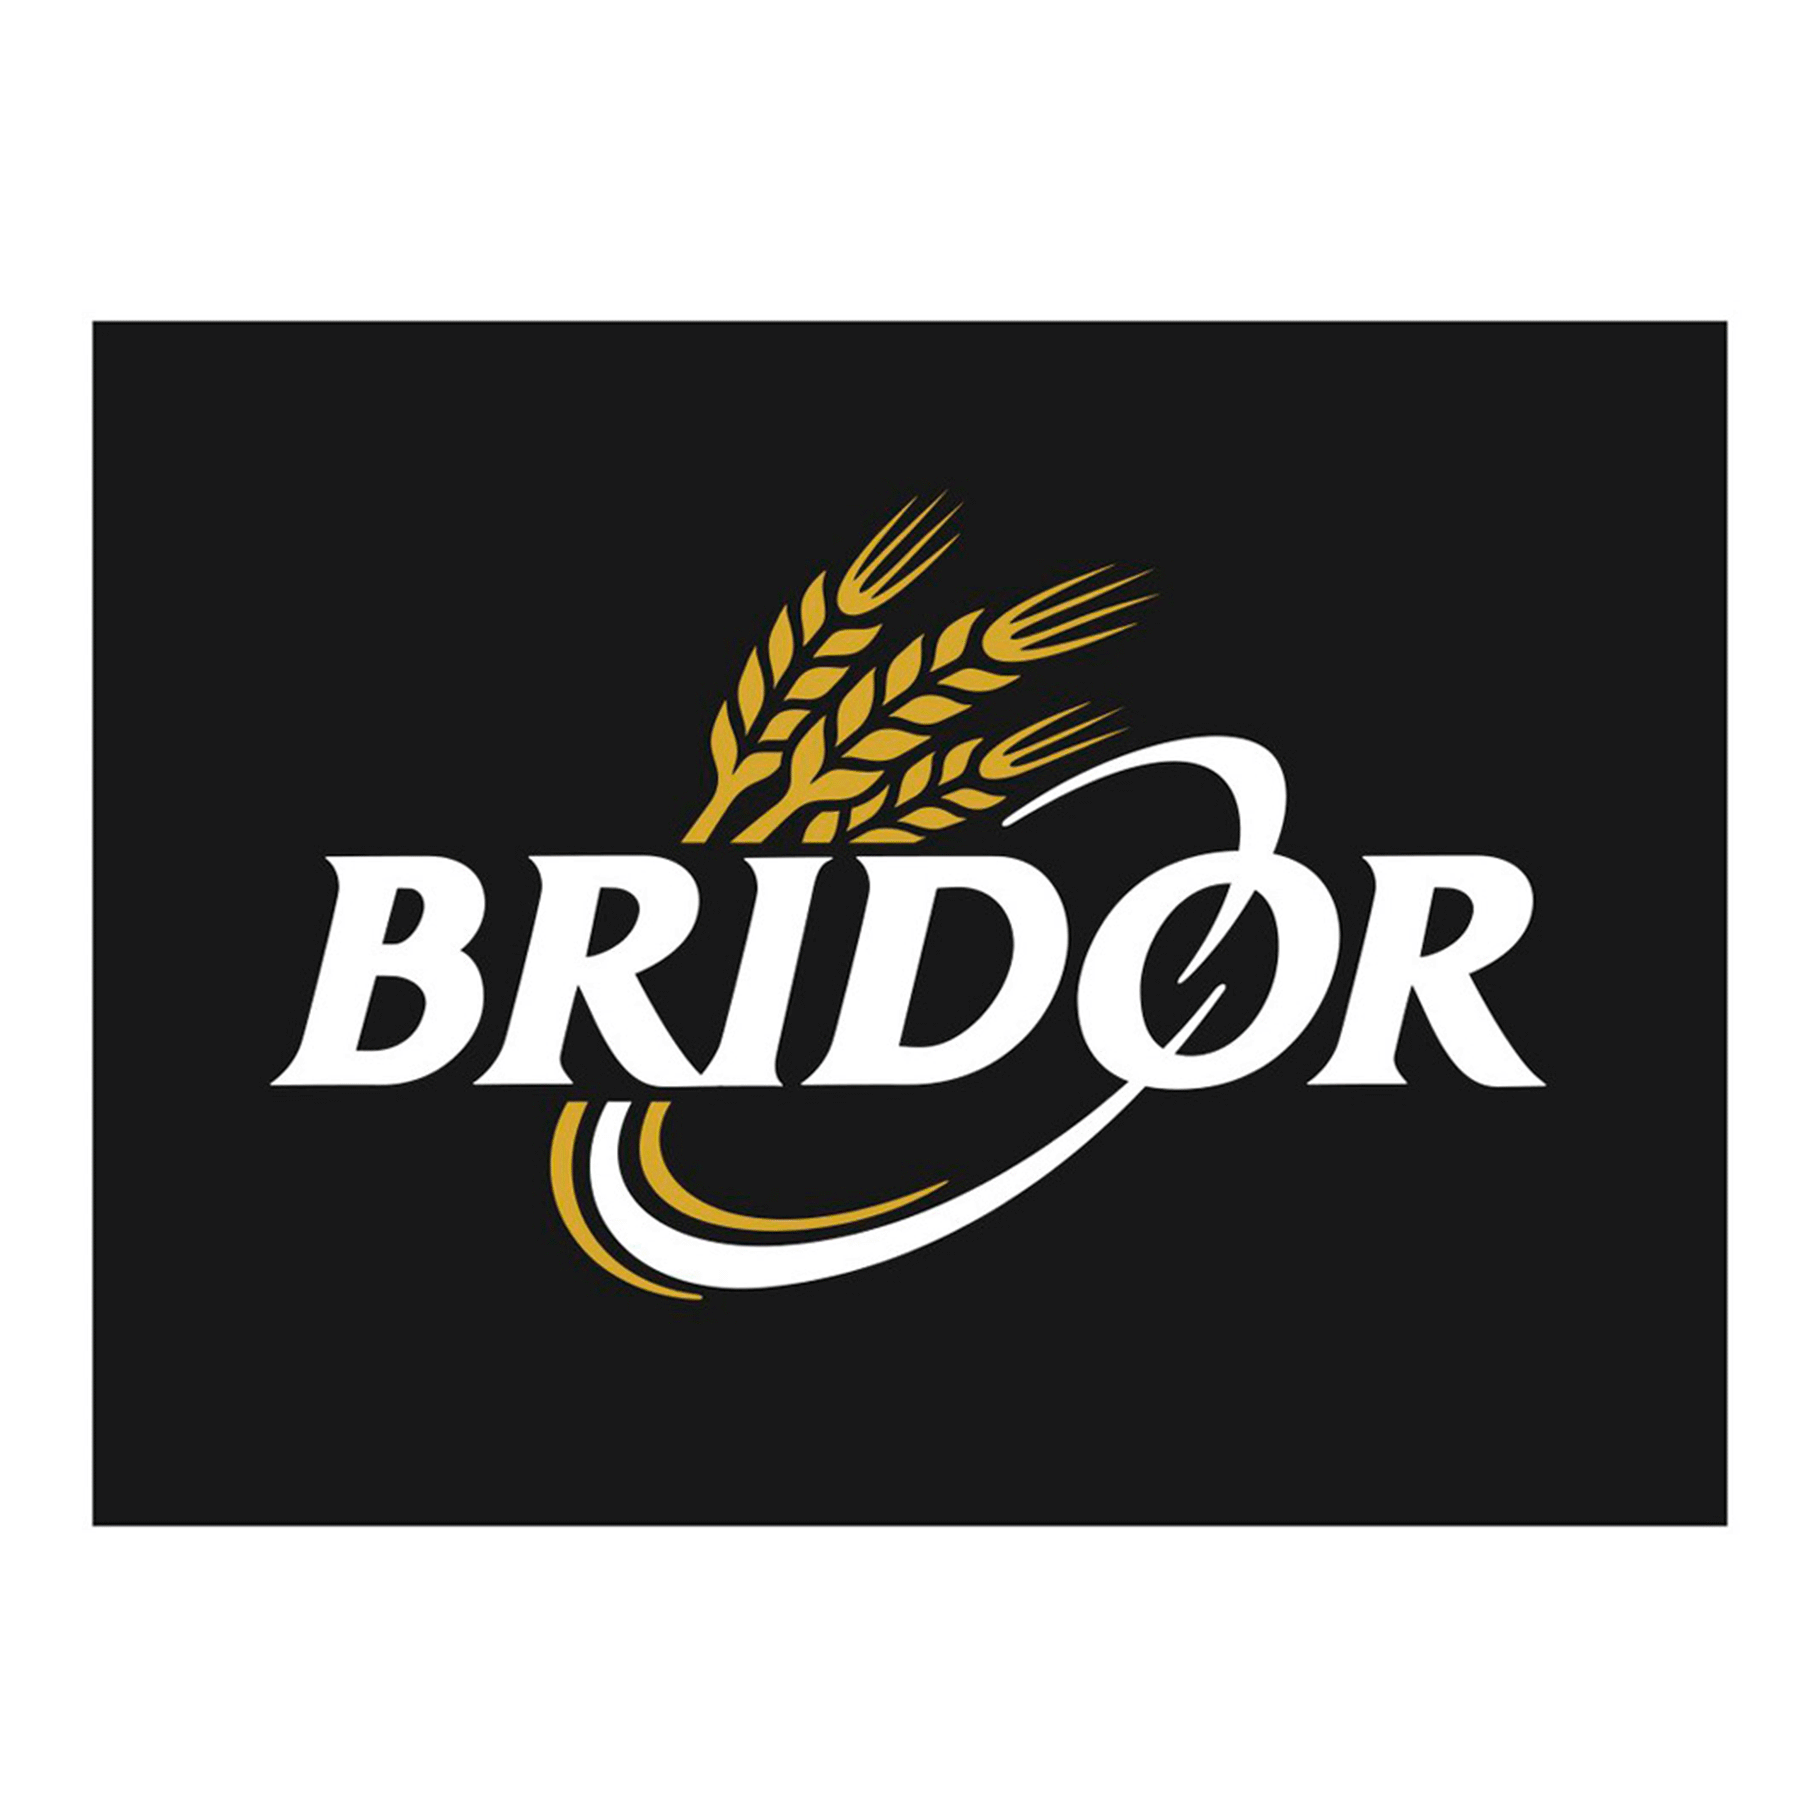 Bridor merk